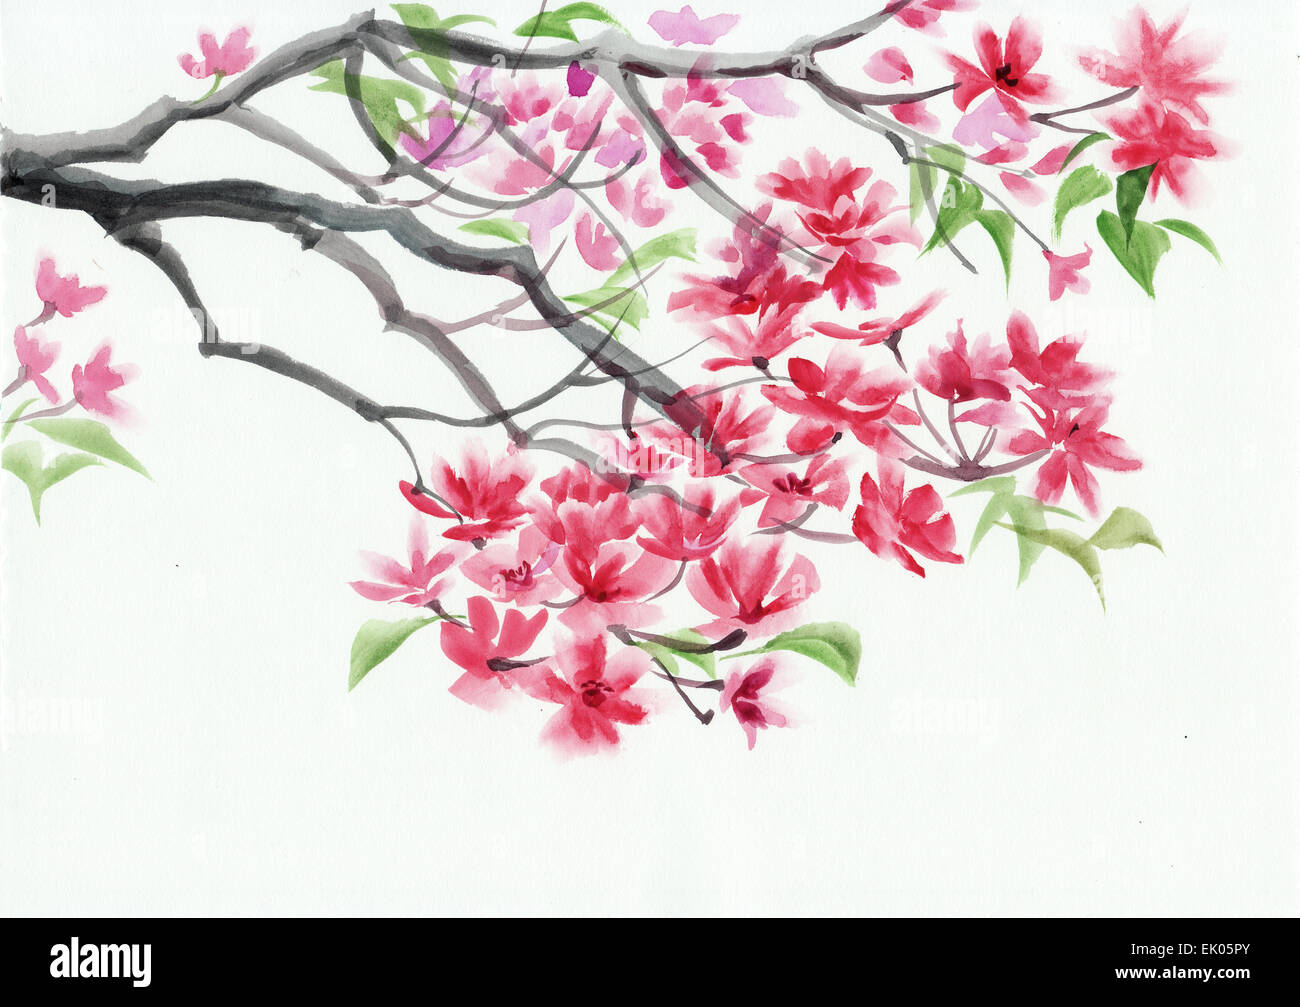 Arbre en fleur avec des fleurs roses de l'aquarelle. Style asiatique. Banque D'Images